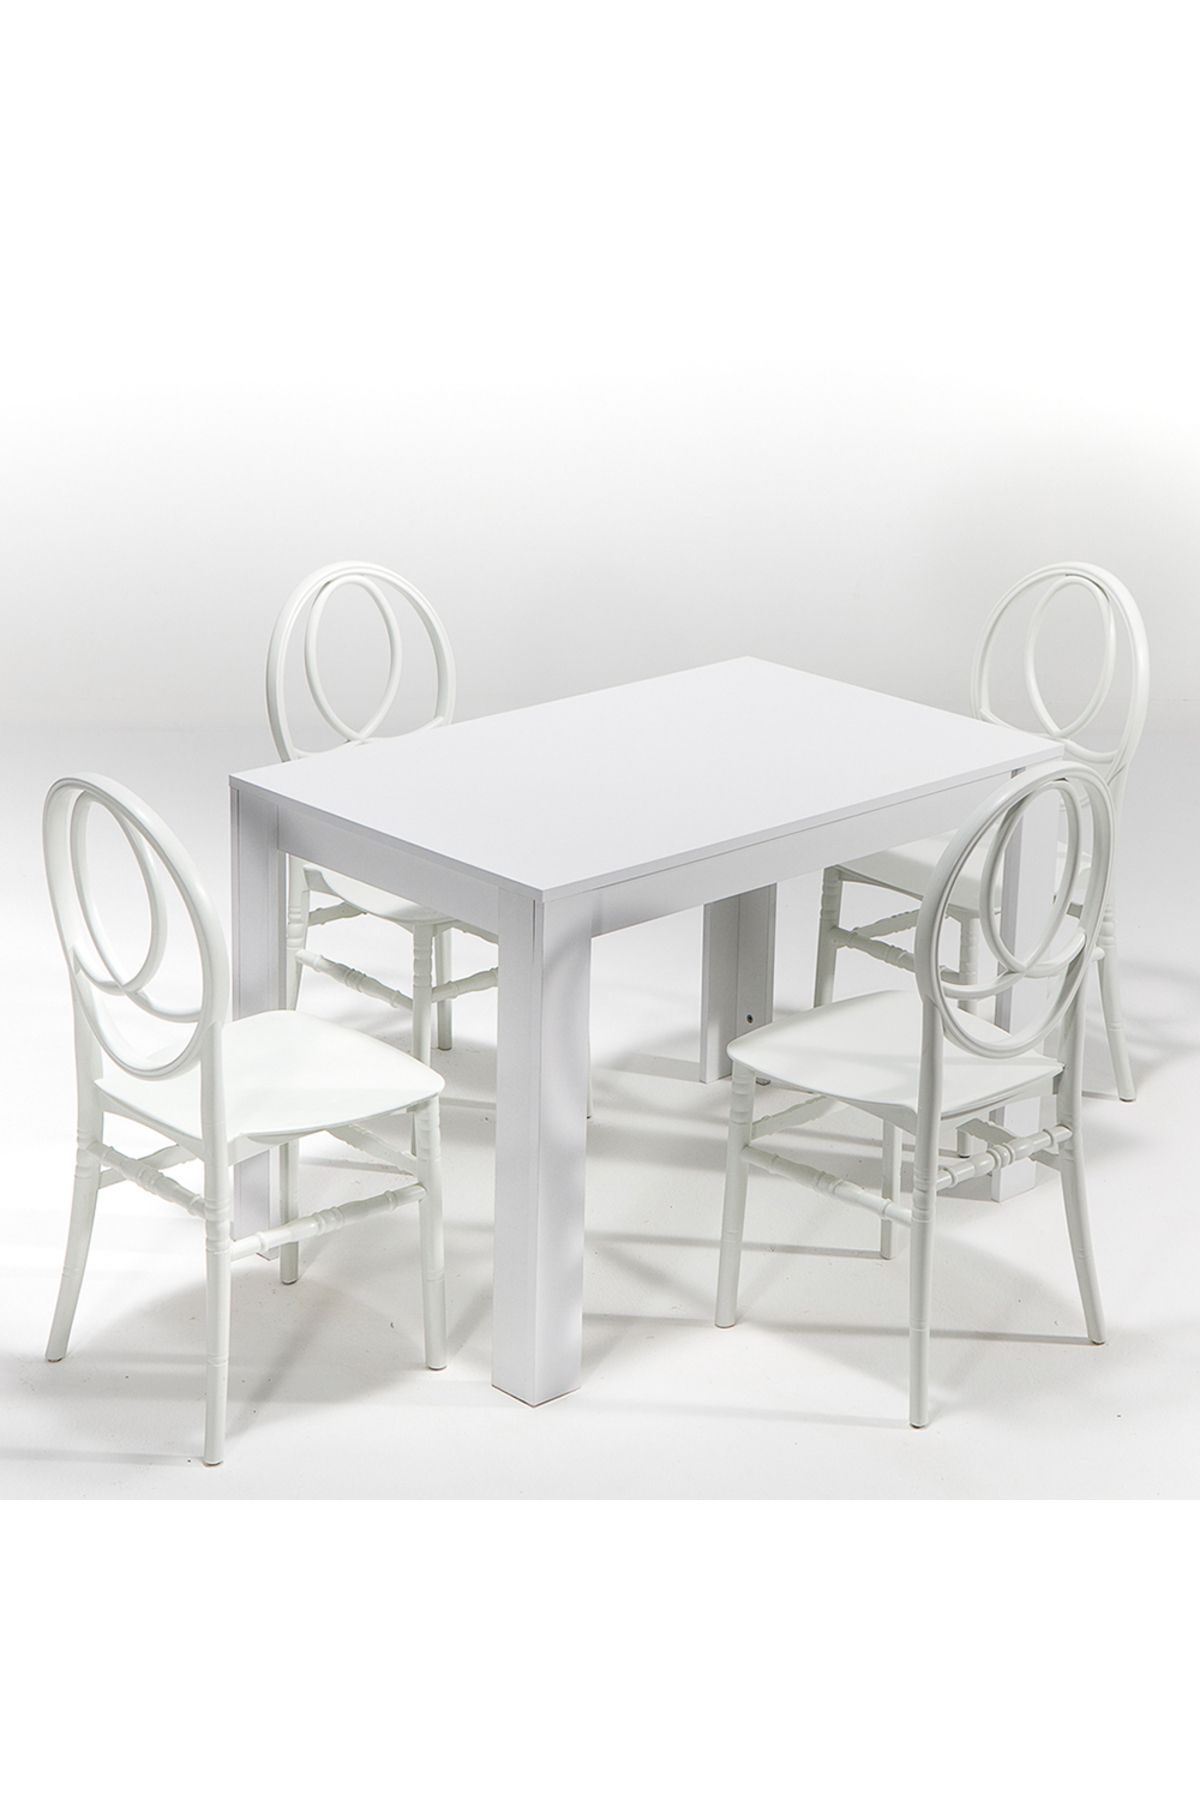 MOBETTO Arda / Phoenix Mutfak Masa Takımı 1 Masa 4 Sandalye - Beyaz